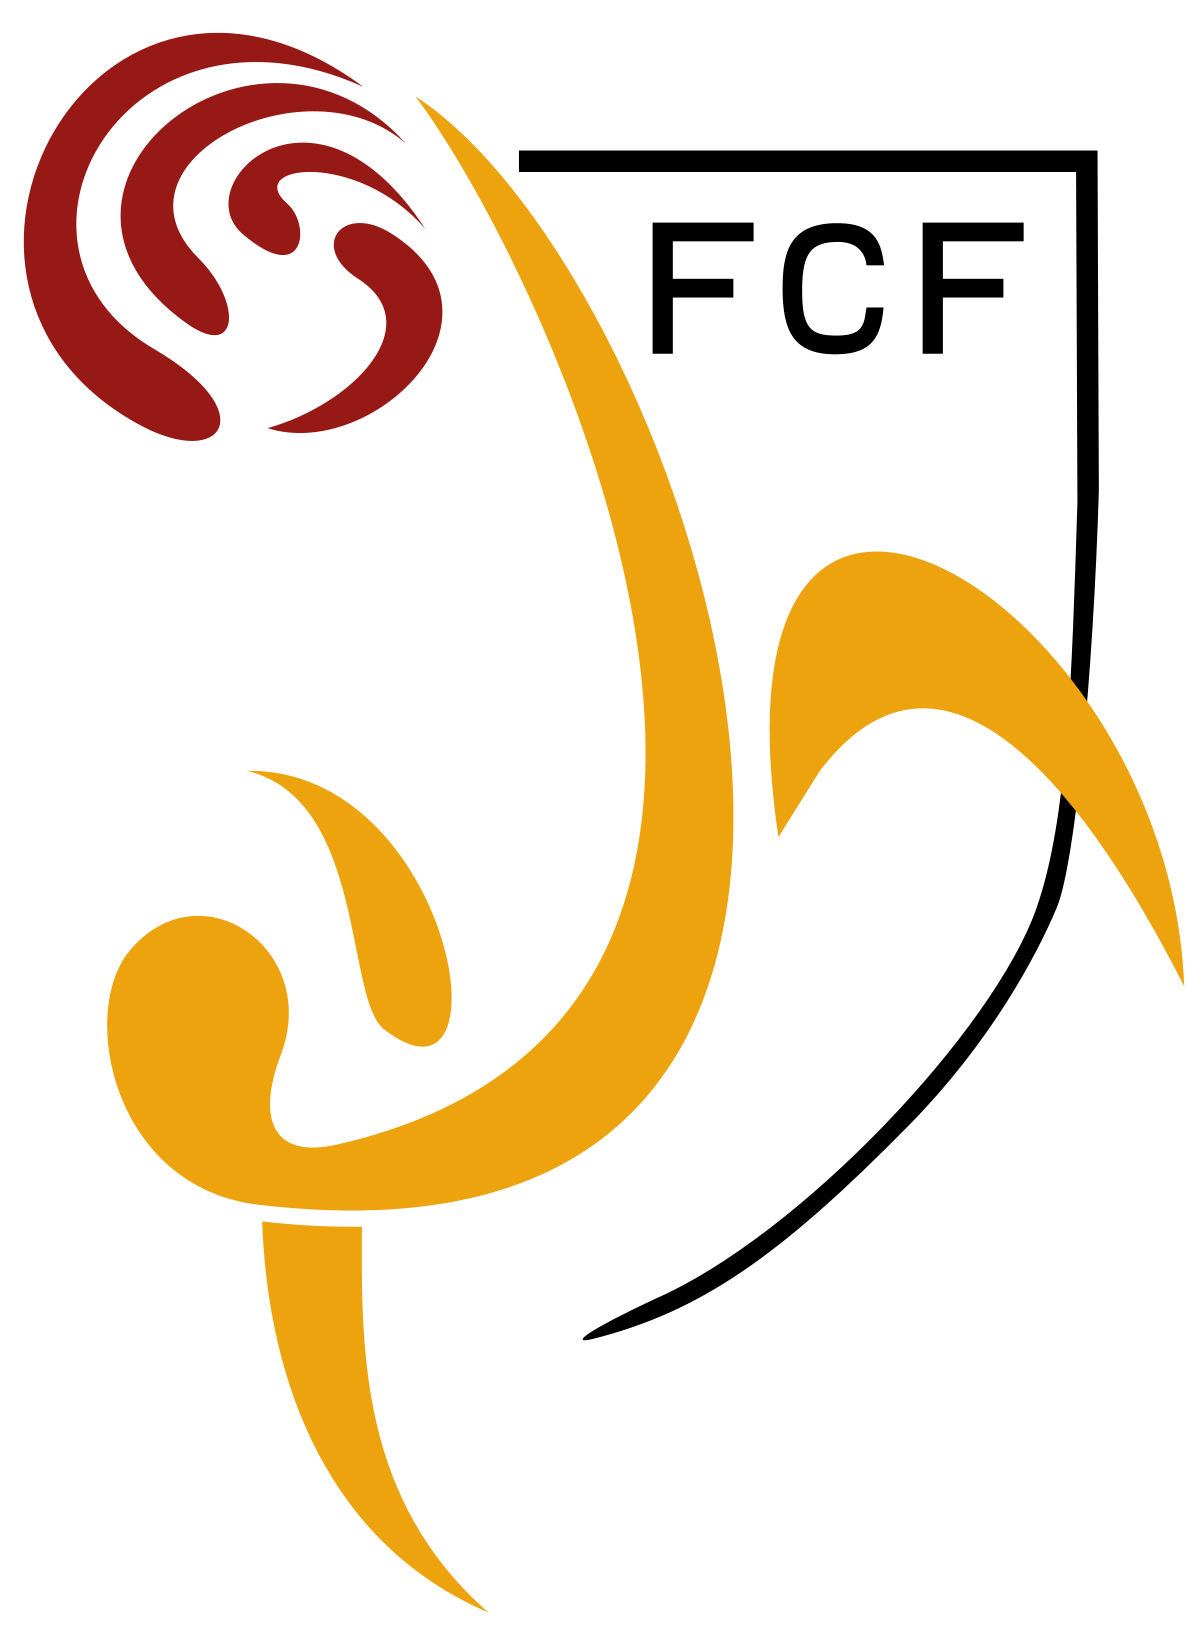 Catalonia logo